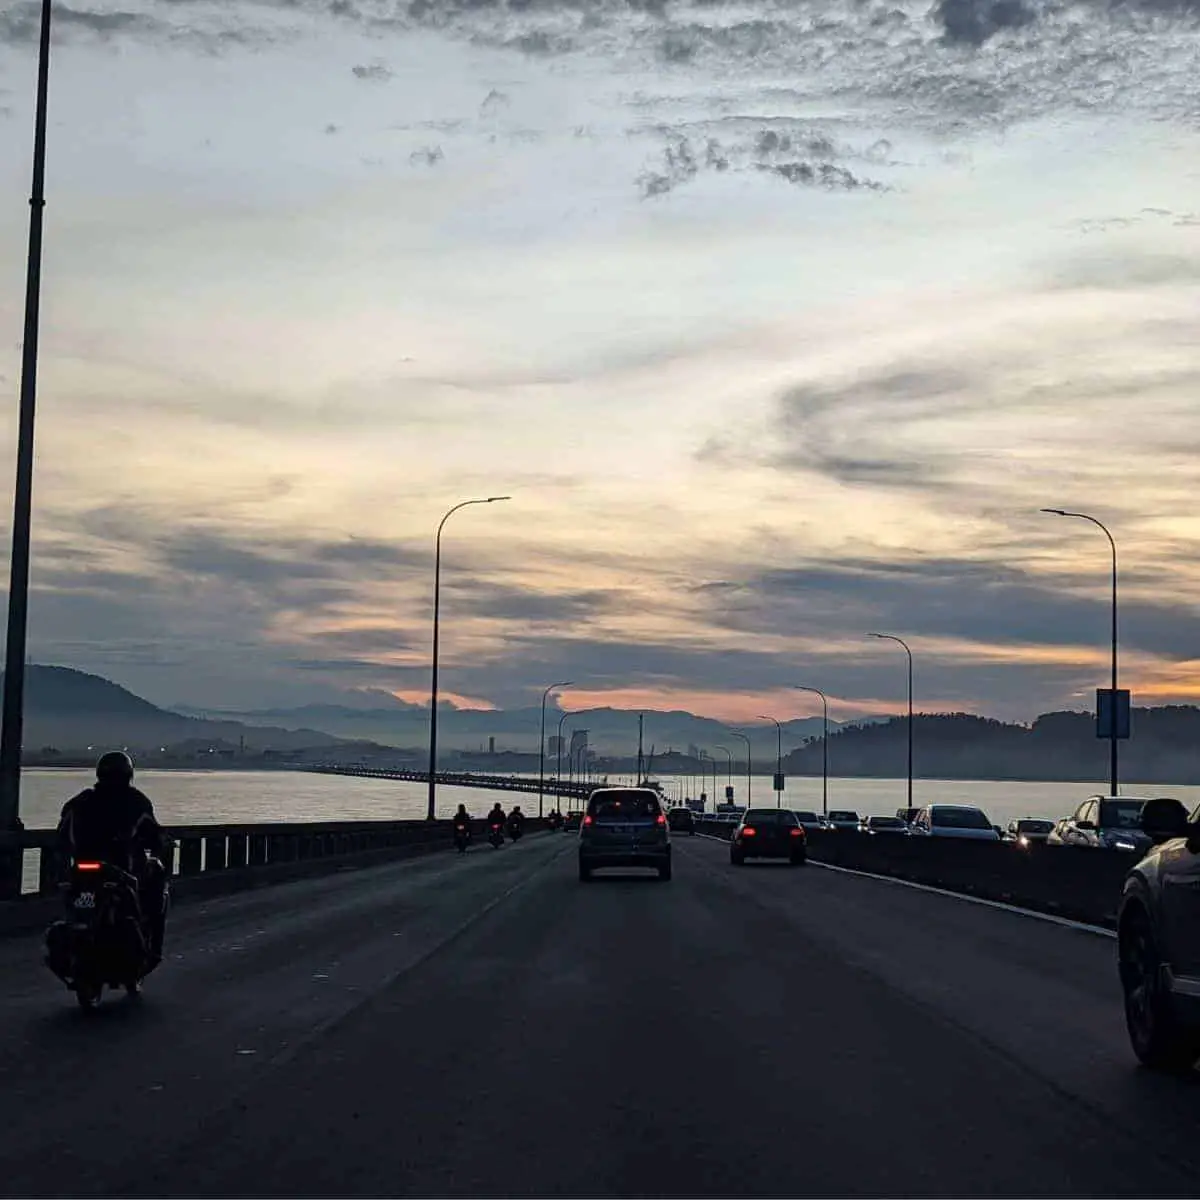 Penang bridge in the morning